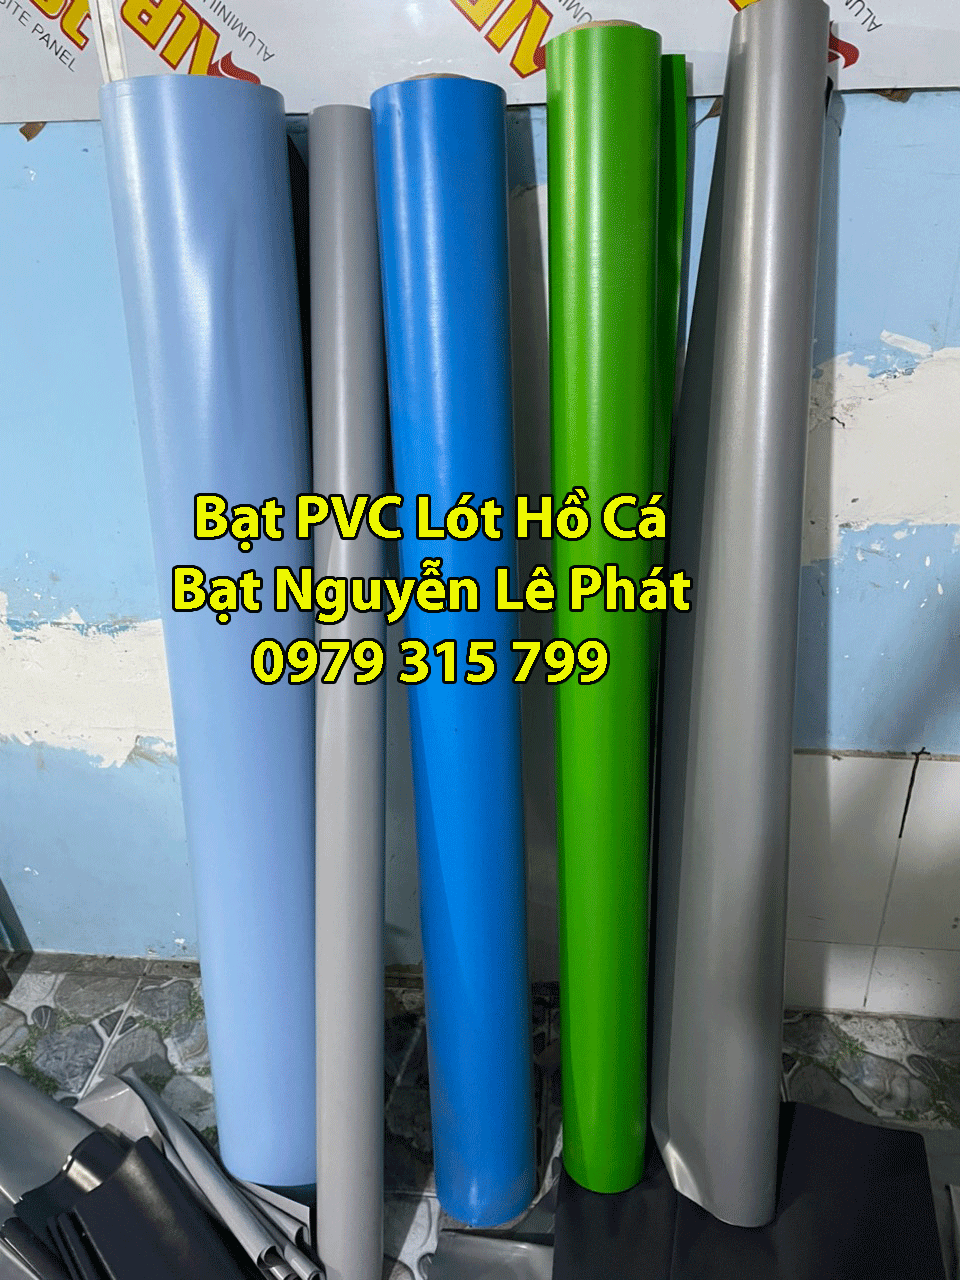 Bạt nhựa PVC lót hồ cá KOI